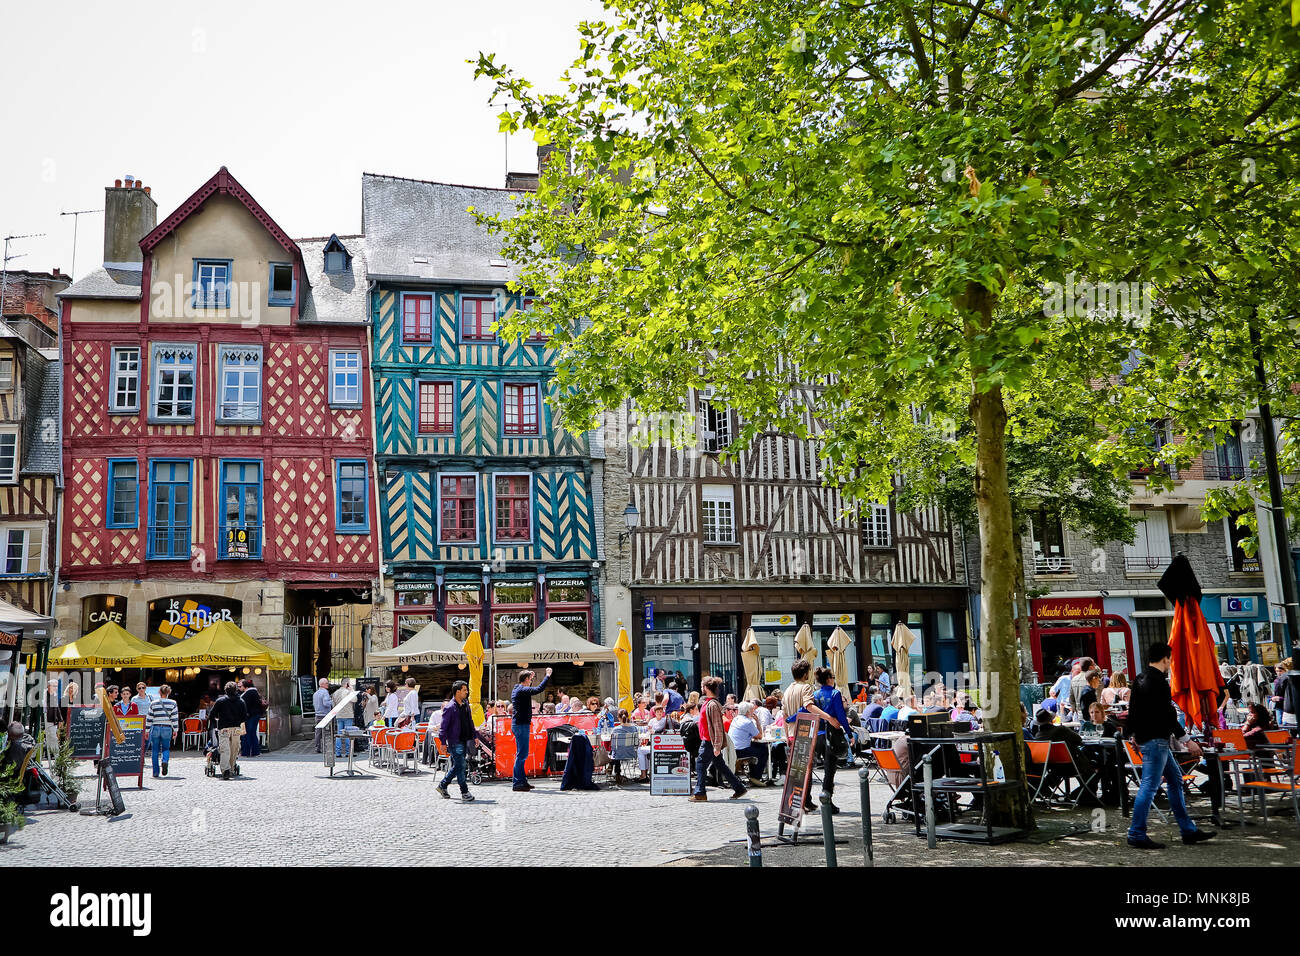 Rennes (Bretagne, nord-ouest de la France) : bâtiments et de terrasses de cafés dans le centre-ville, place Sainte-Anne' square. Façades colorées de timb Banque D'Images